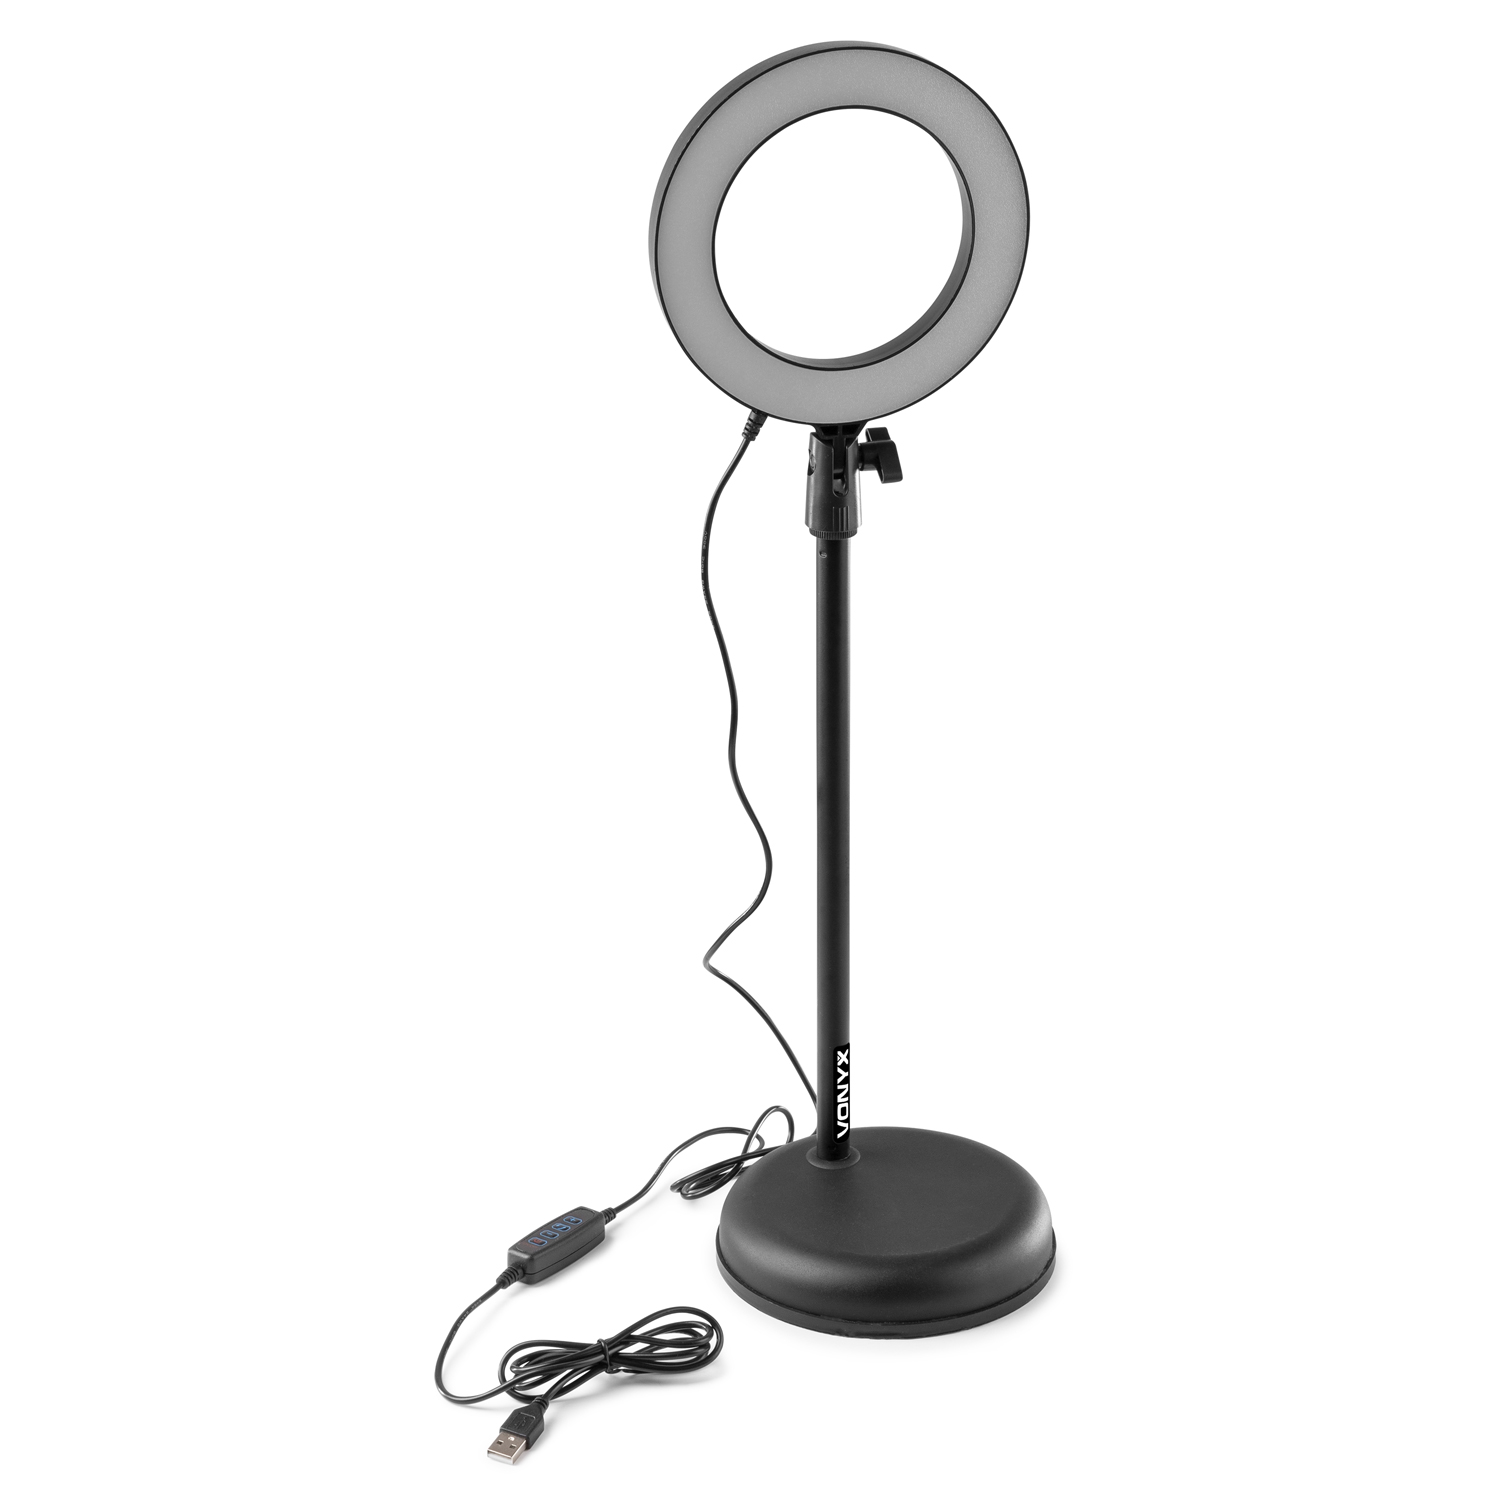 VONYX RL20 Ring lamp 16cm και Stand με θέση για 2x Smartphone και Μικρόφωνο 188.221